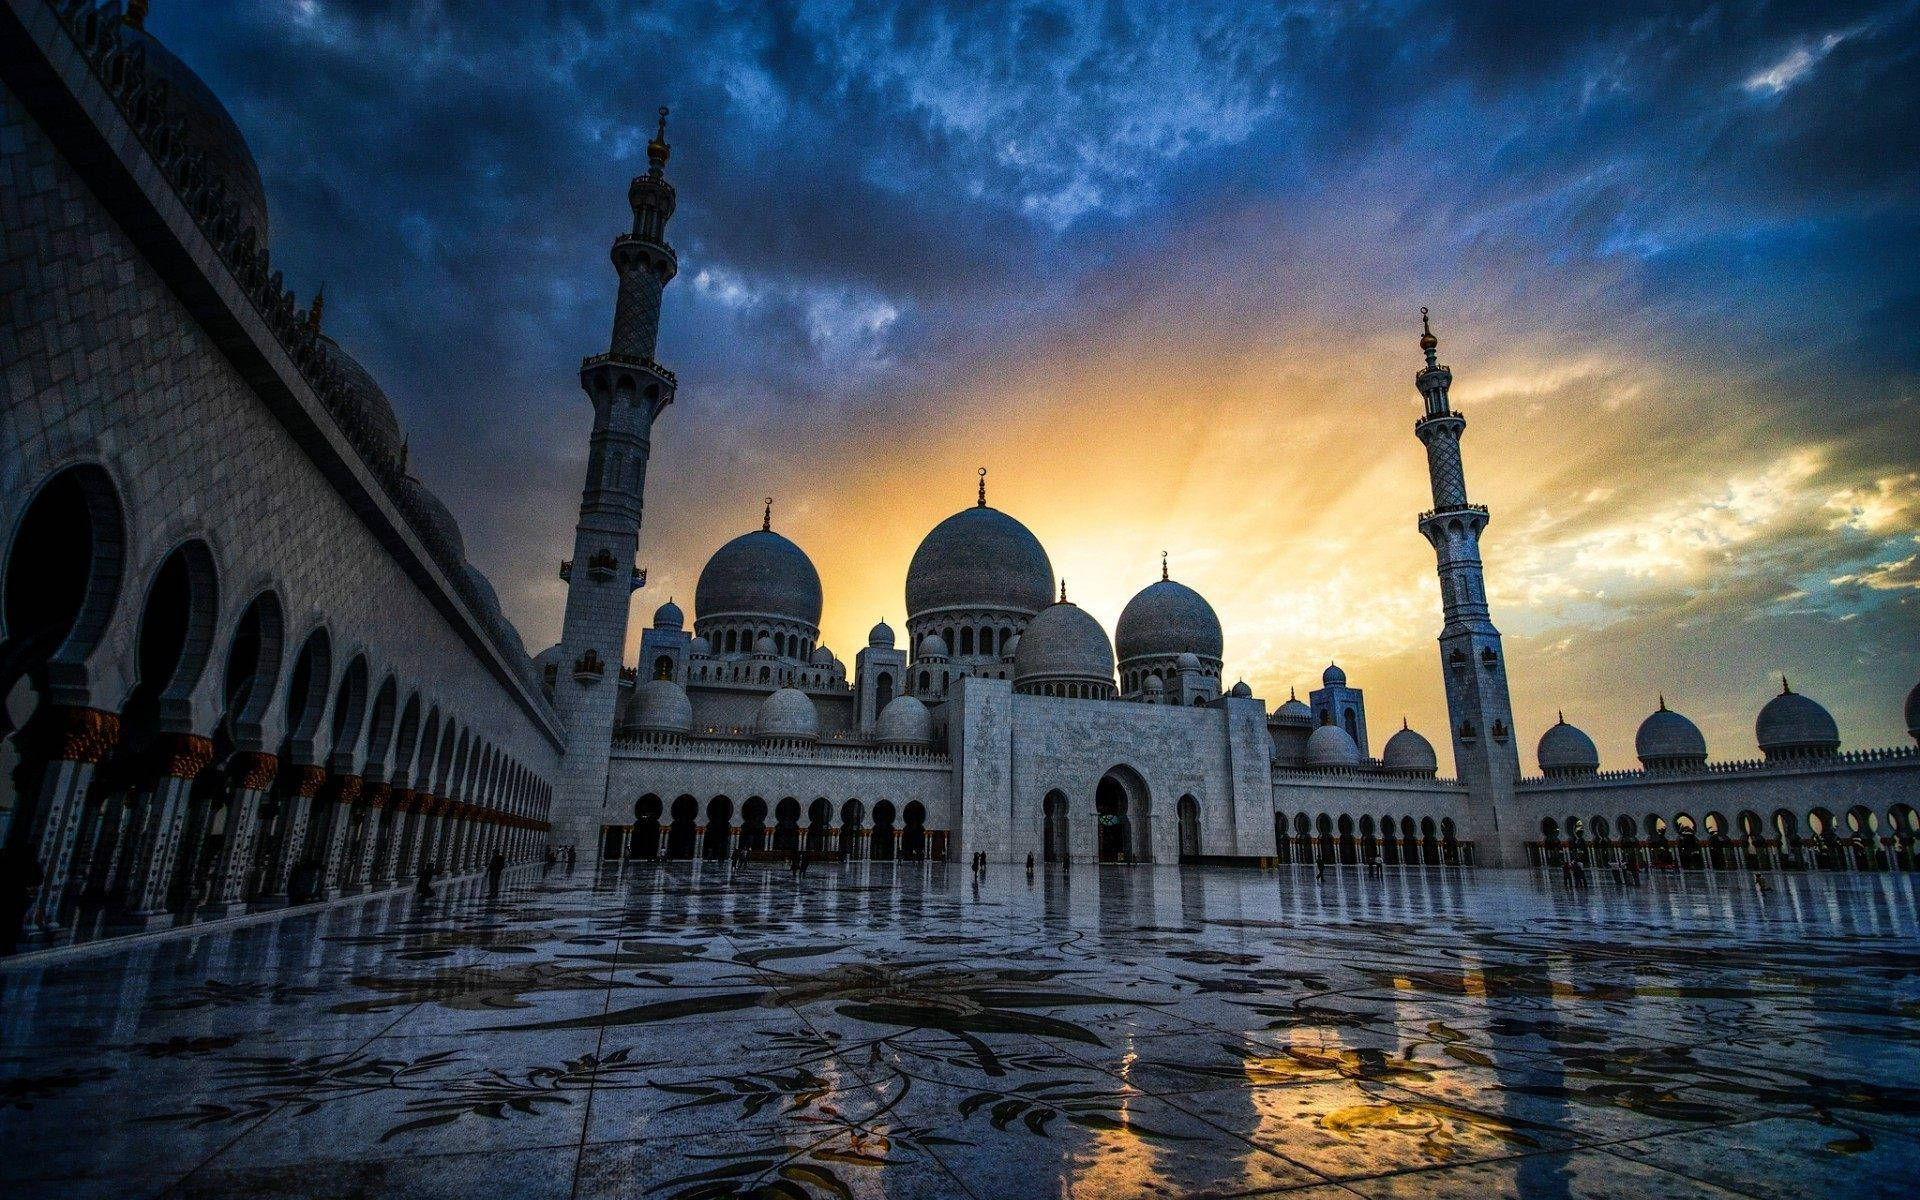 دانلود تصویر زیبا از مسجد بزرگ با کیفیت فوق العاده 